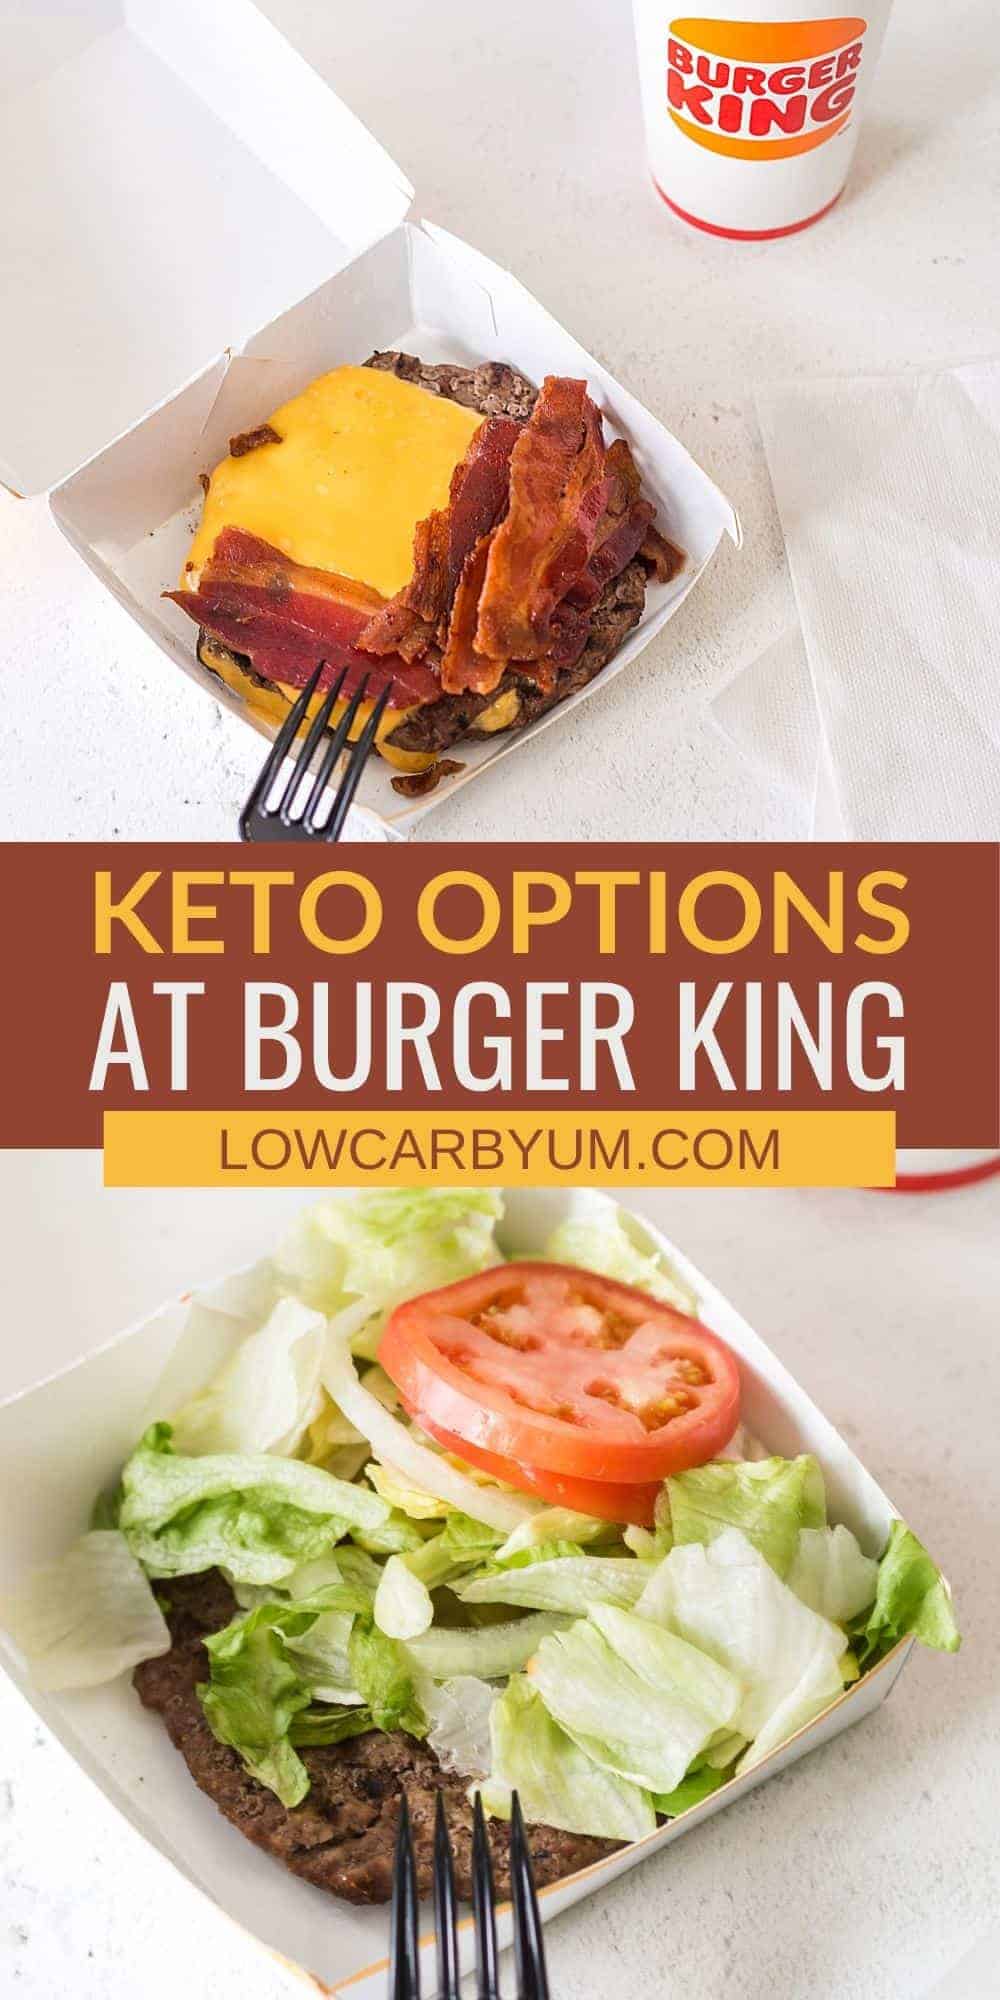 keto options at burger king pinterest image.